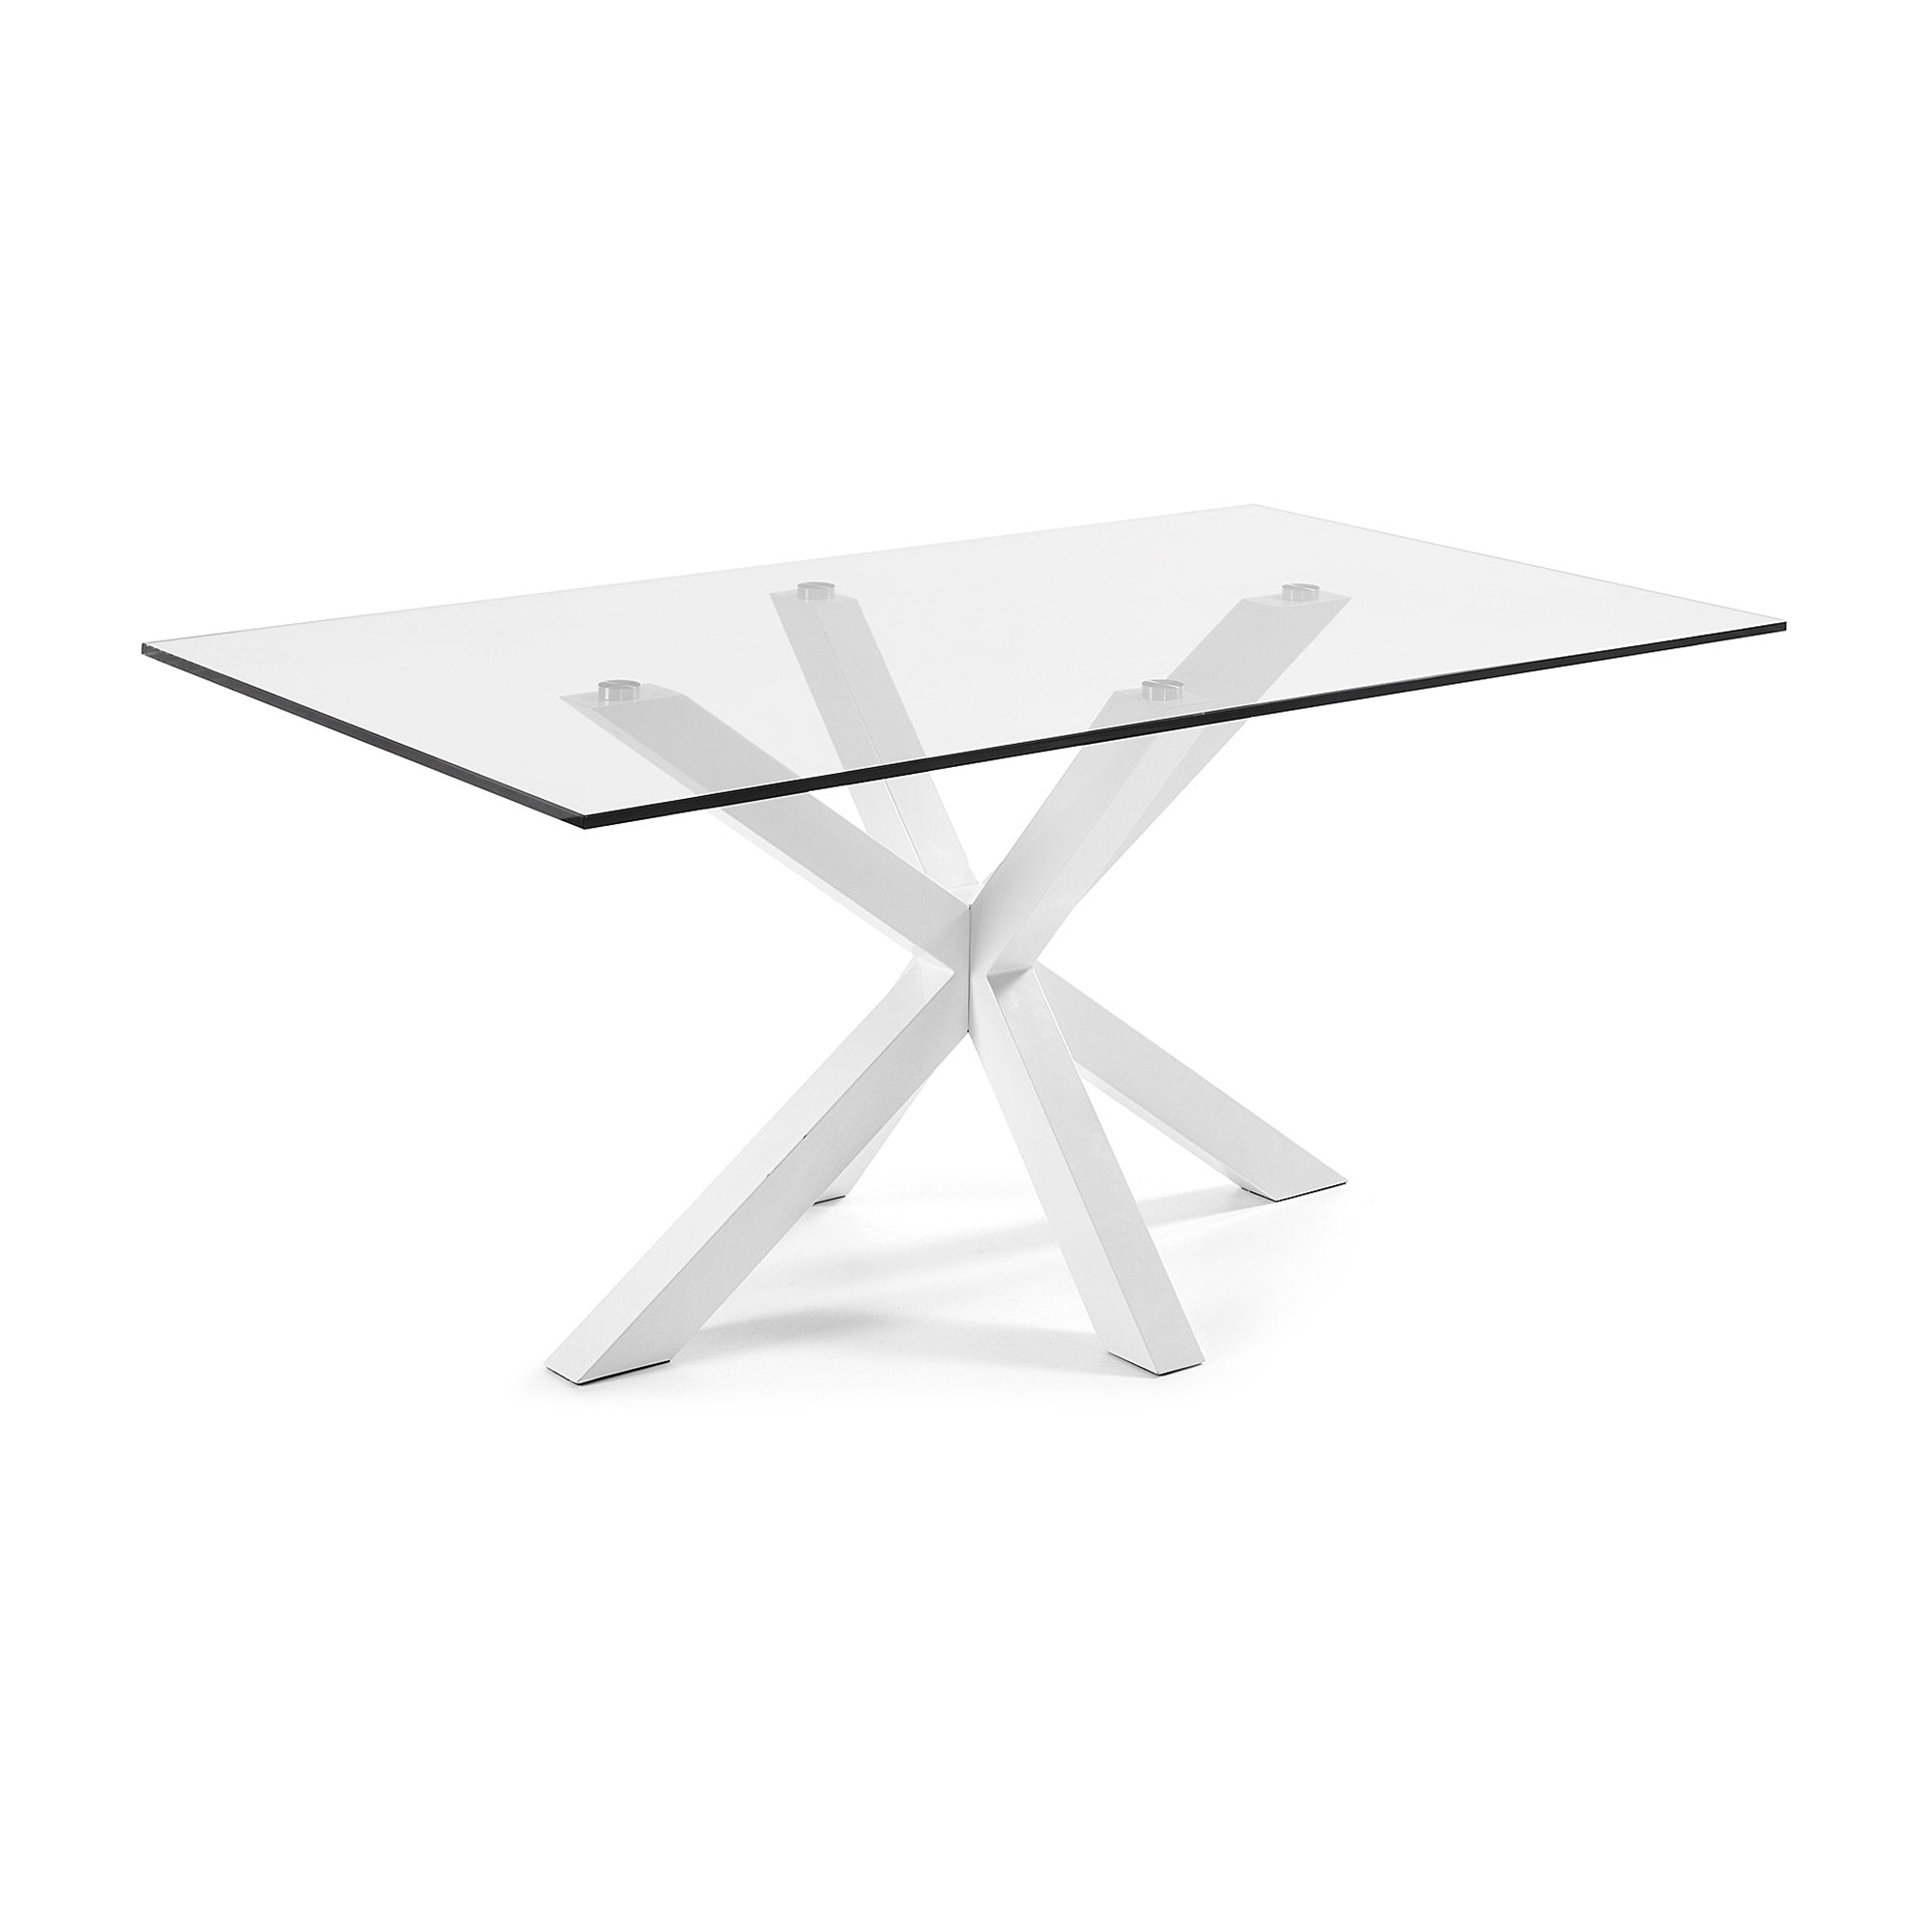 Argo üvegasztal acéllábakkal, fehér kivitelben 160 x 90 cm